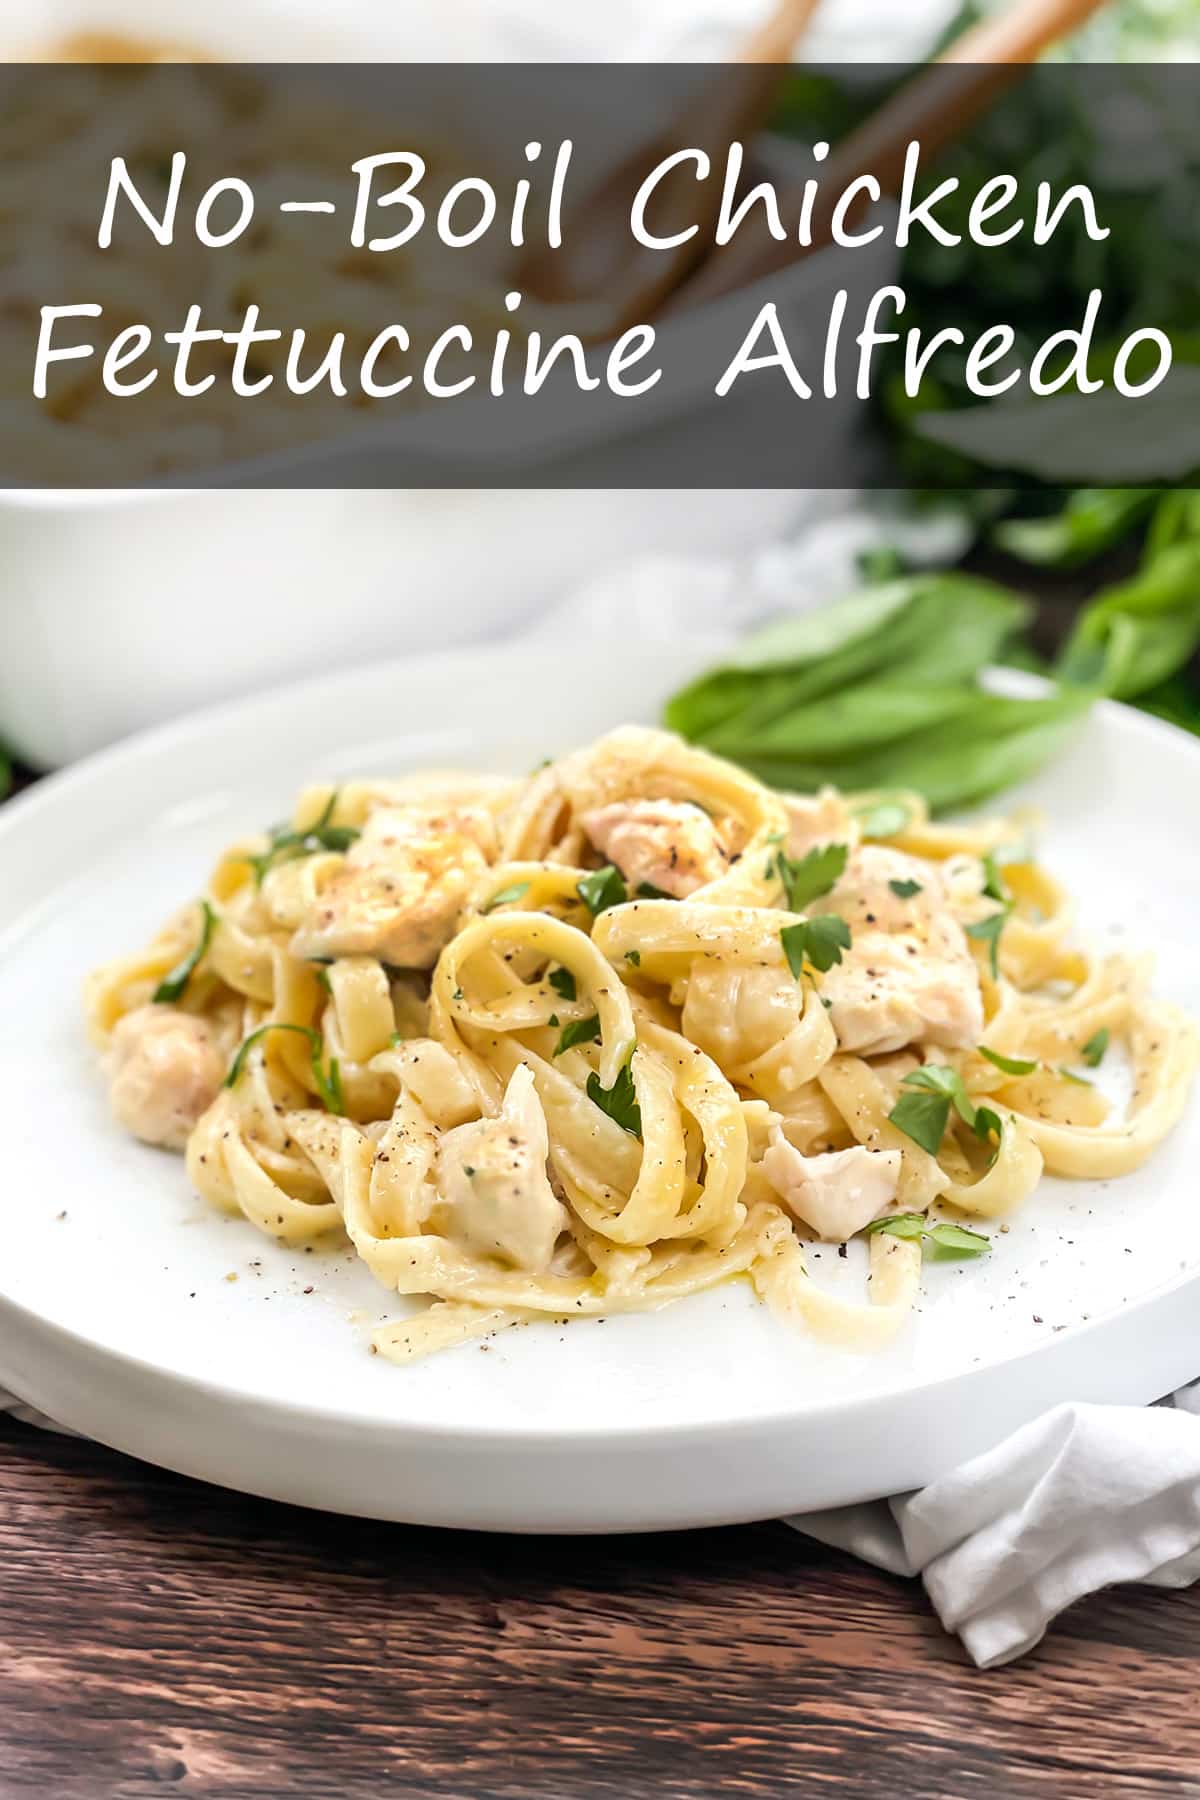 No-Boil Chicken Fettuccini Alfredo